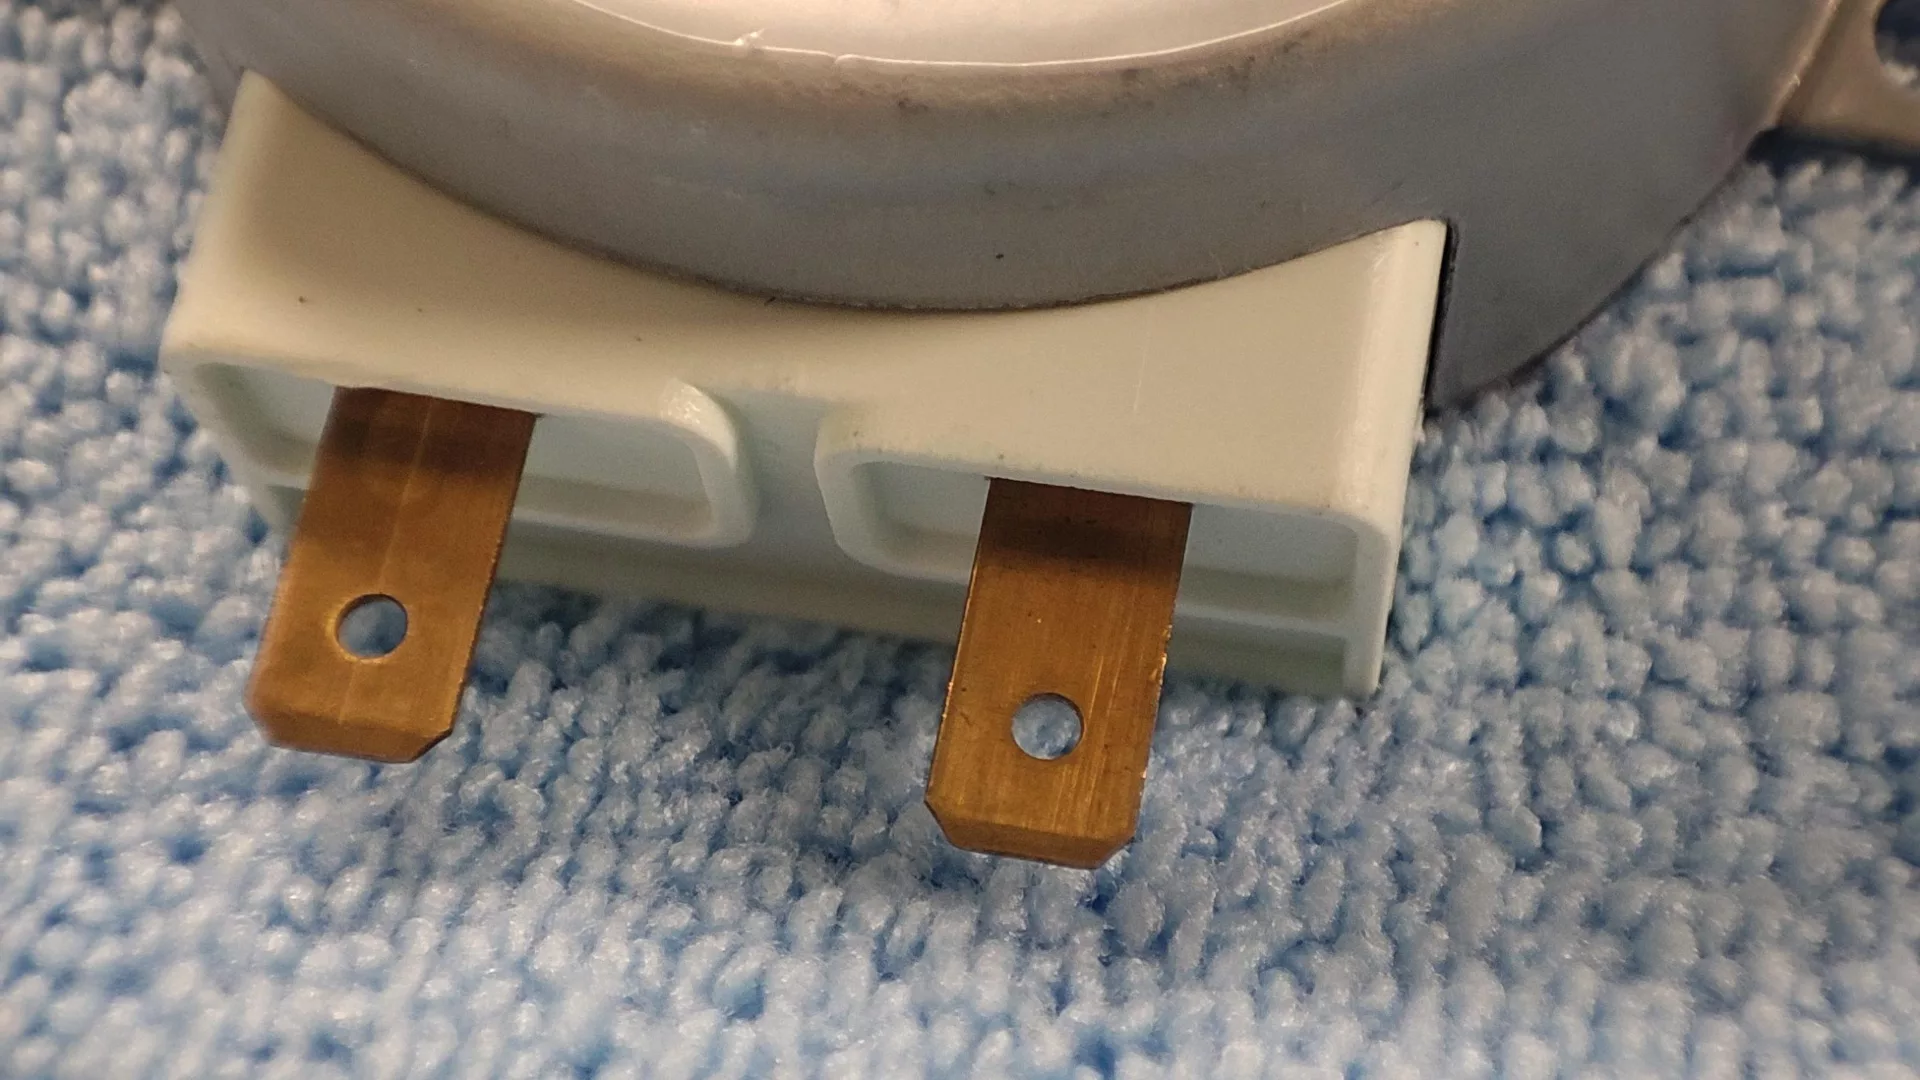 Nowy silnik talerza obrotowego do kuchenki mikrofalowej Ikea 303.009.45 - widok na elementy łączeniowe